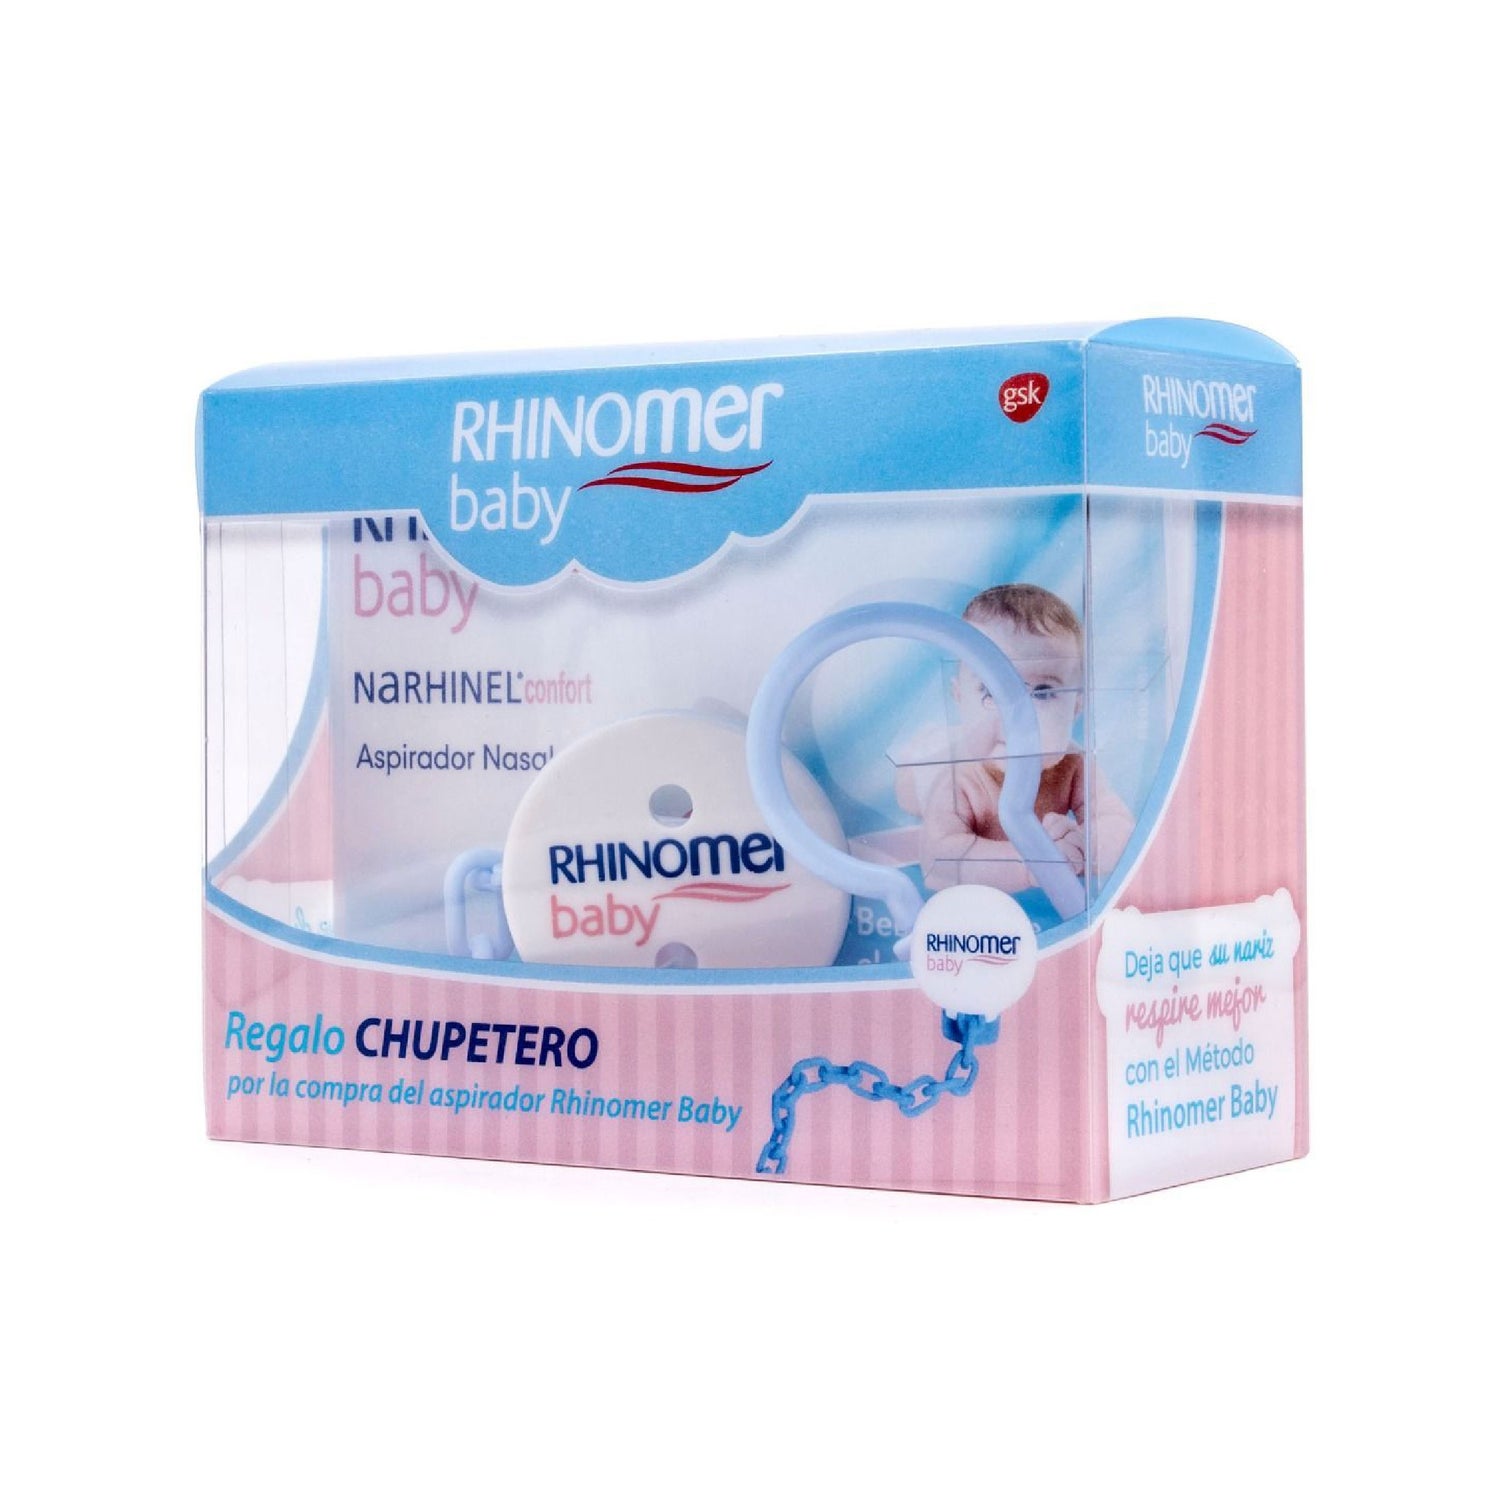 Rhinomer Baby Narhinel Comfort Vacuum Cleaner Nasal+Gift Pacifier